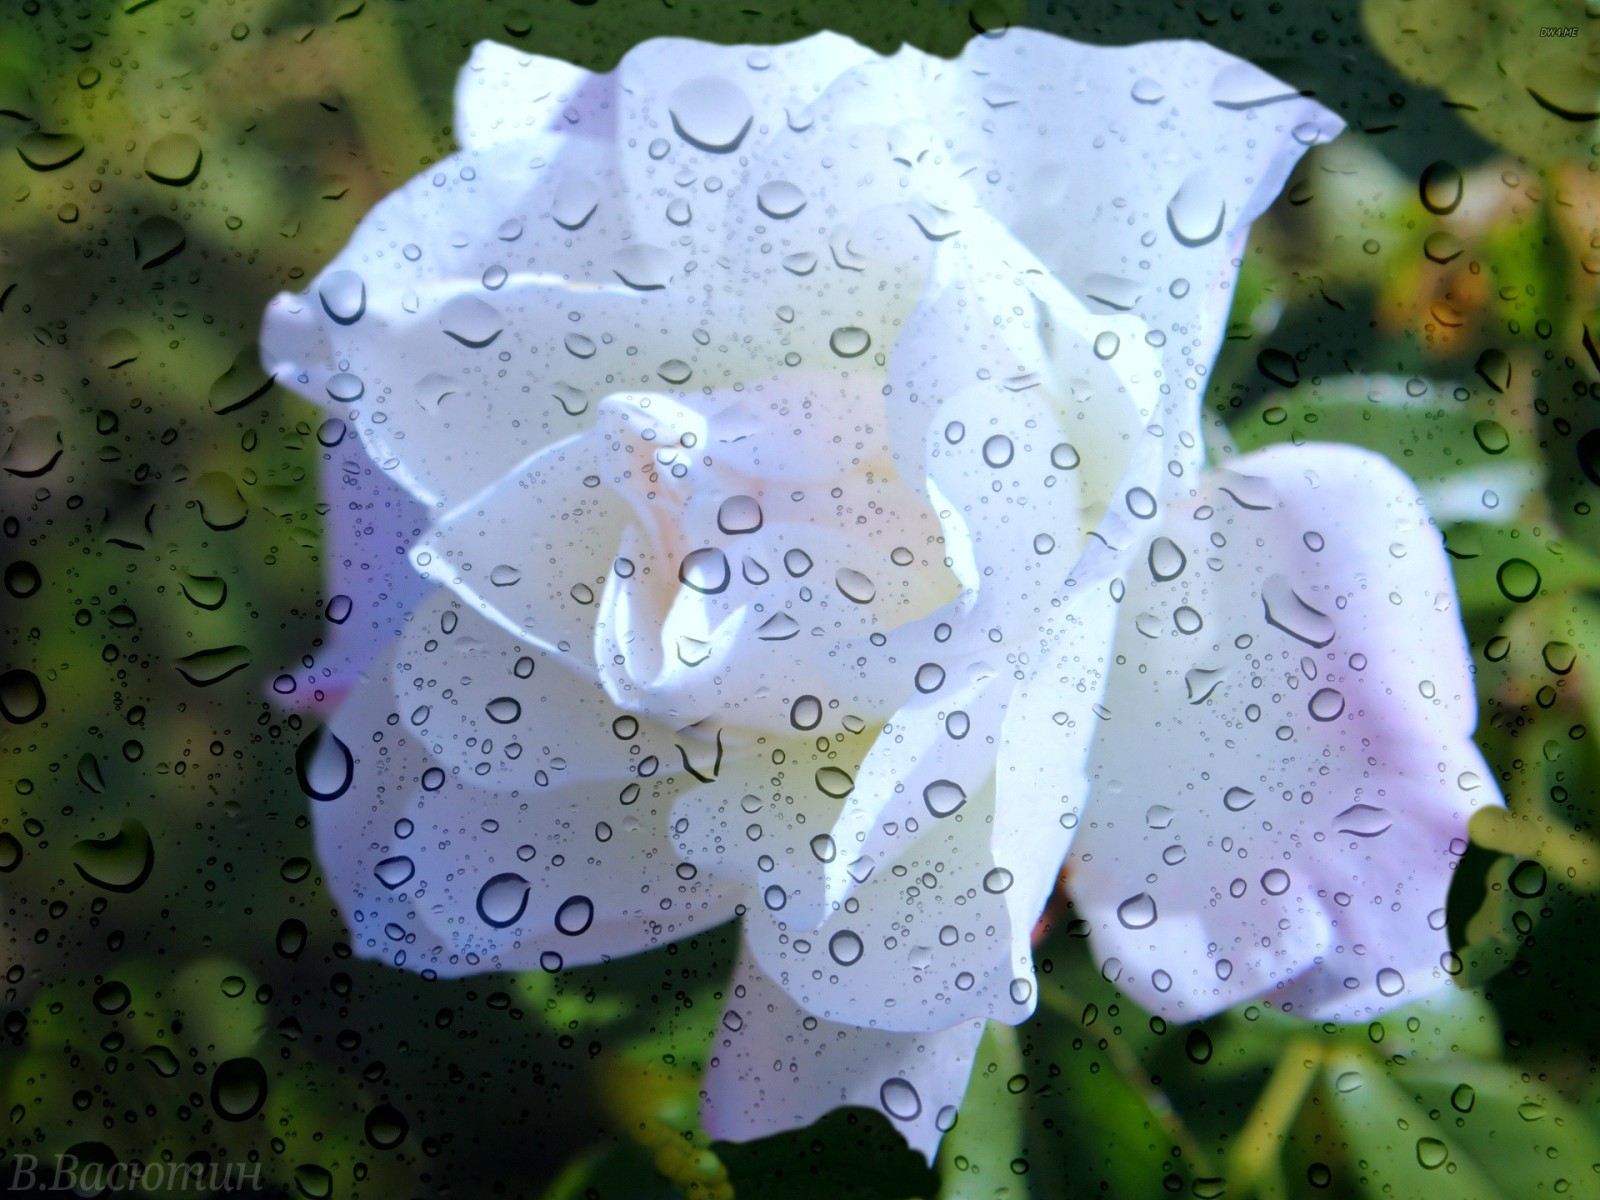 mùa hè, cốc thủy tinh, Hoa hồng, mưa